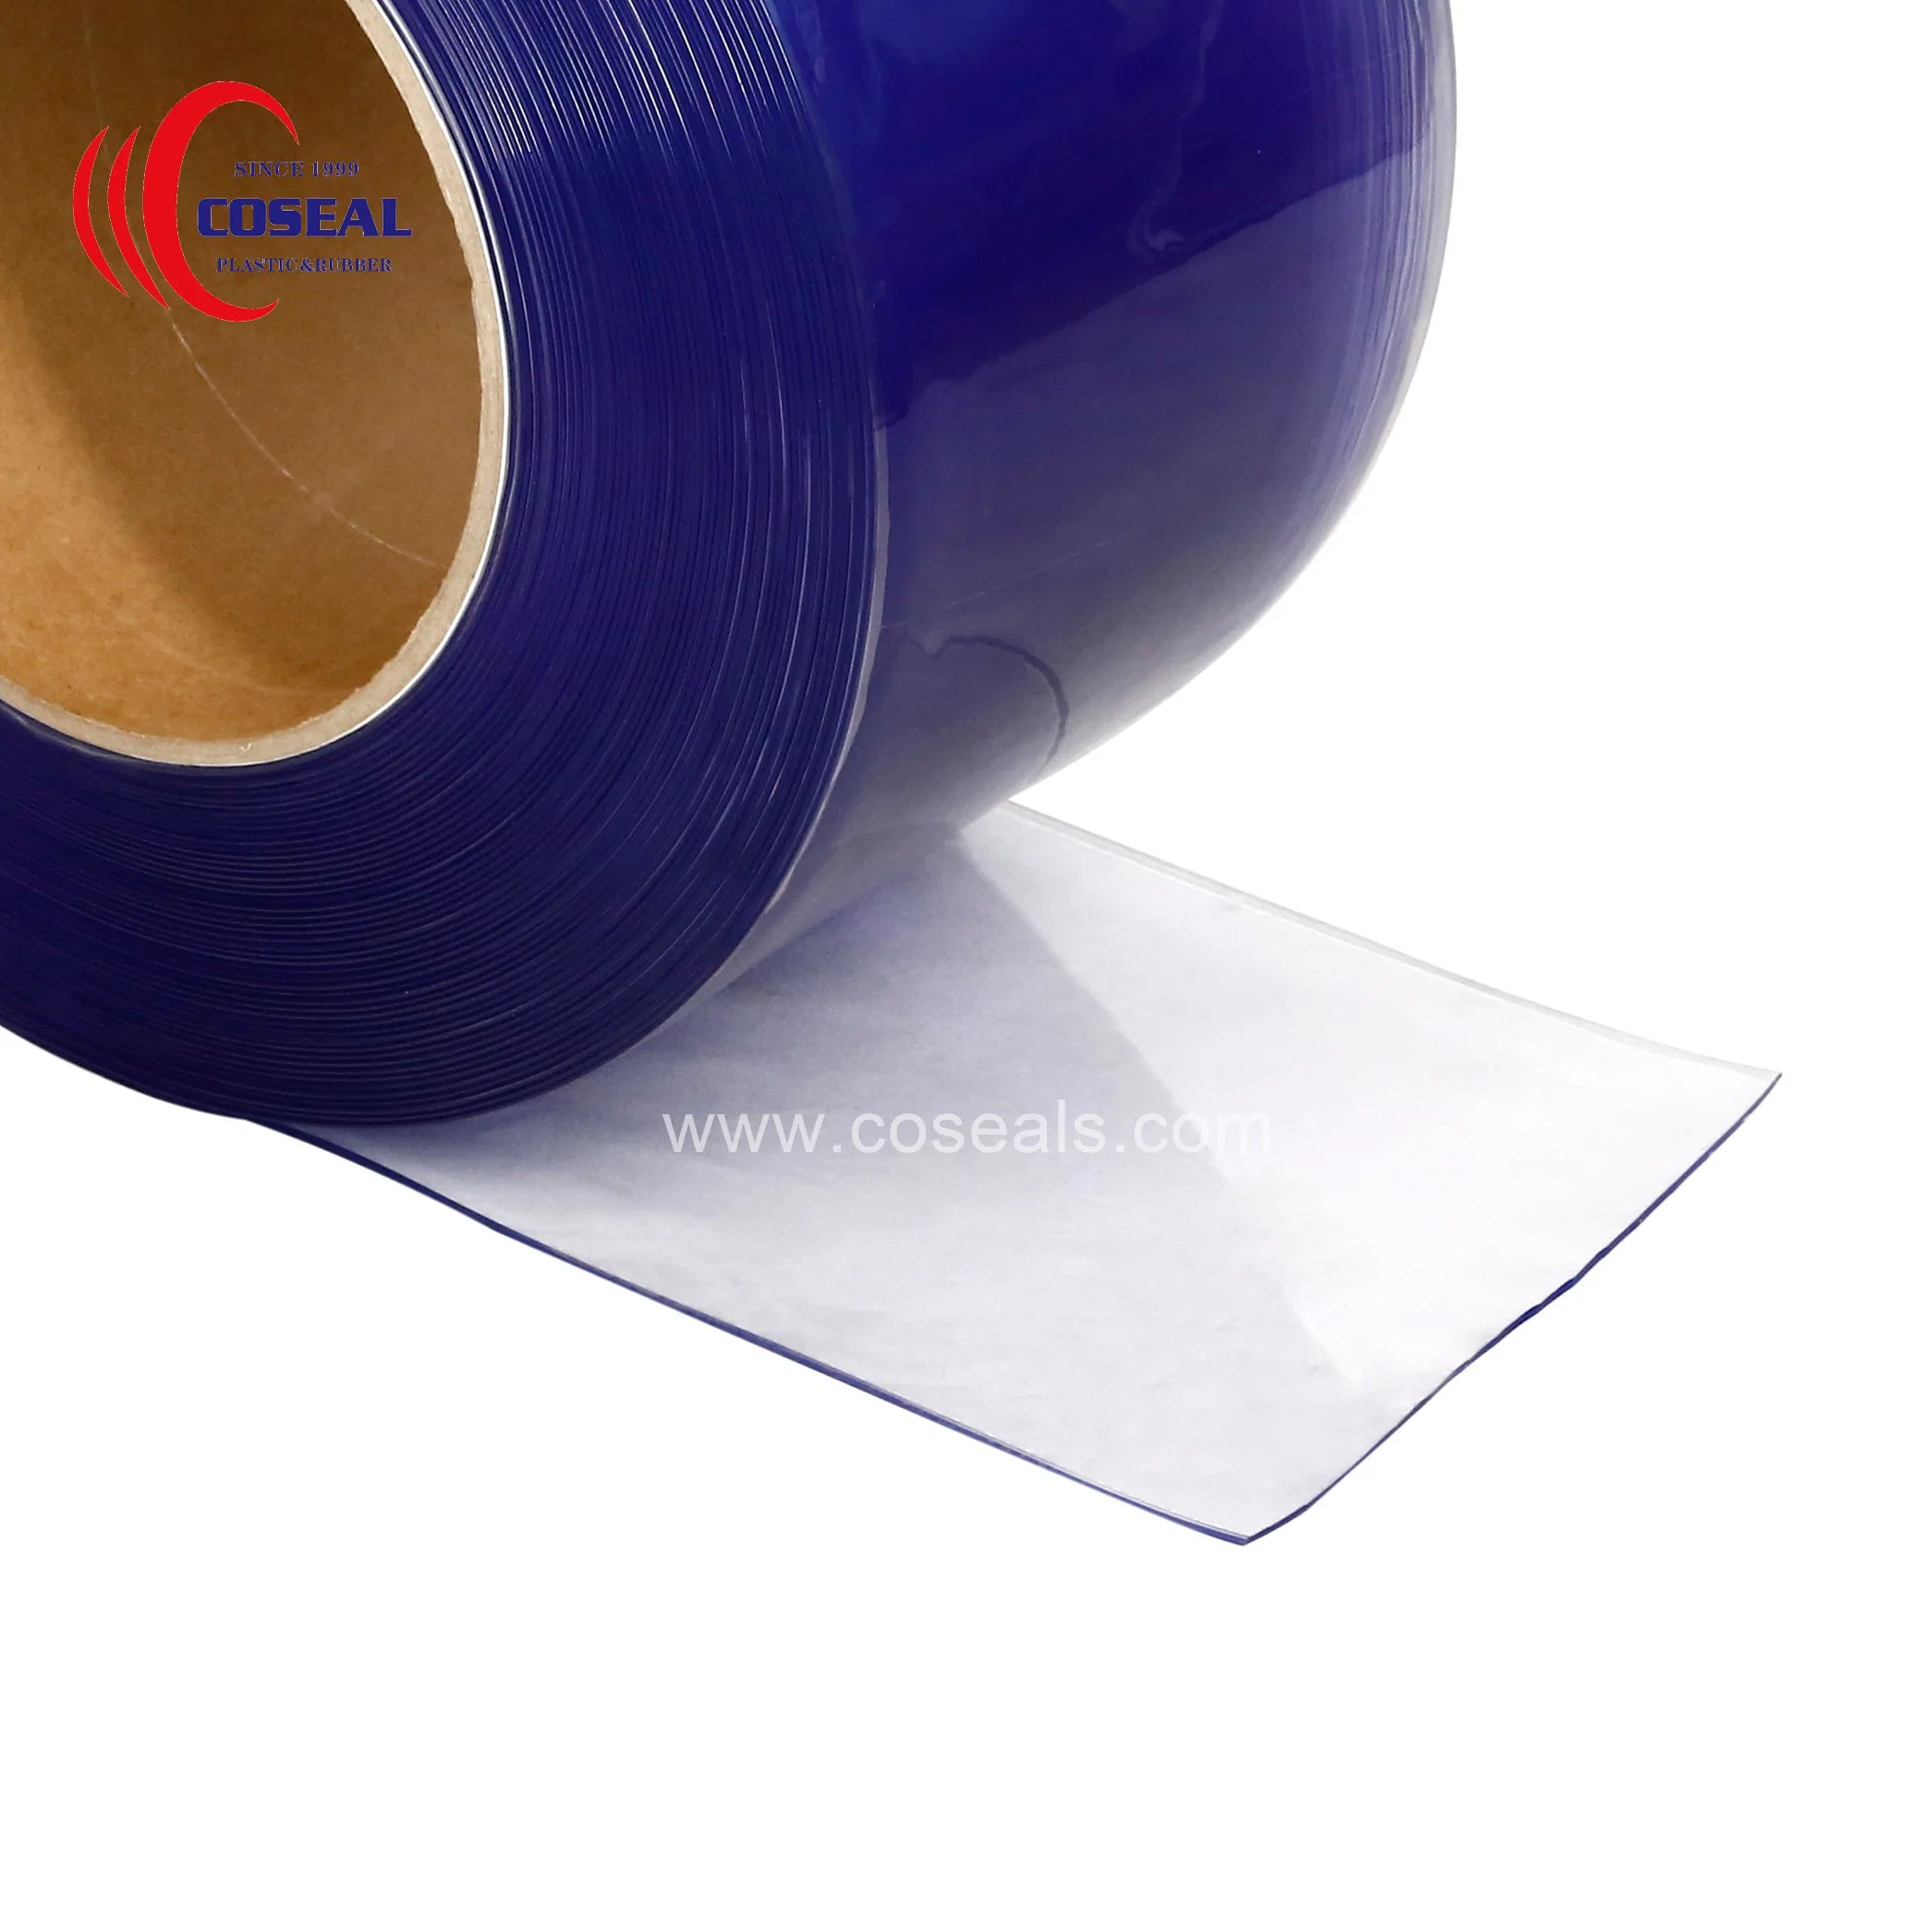 غشاء بلاستيكي بلاستيكي بلاستيكي PVC للحماية من الرياح وعملي مرن مع تقييد استخدام المواد الخطرة (RoHS